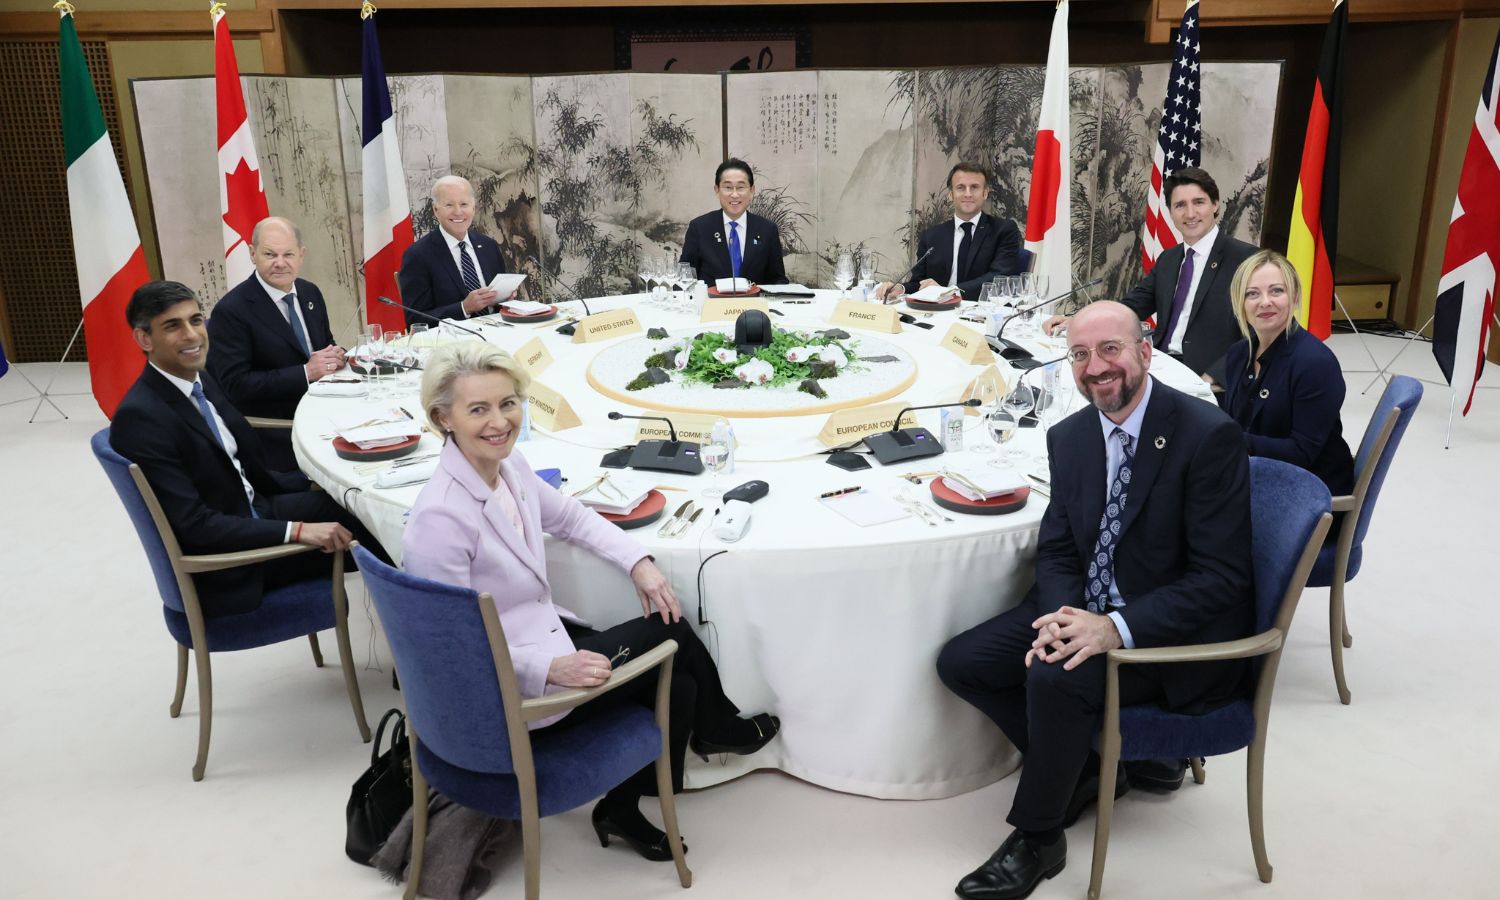 اجتماع قادة مجموعة "الدول السبع" وممثلان عن الاتحاد الأوروبي في مدينة هيروشيما في اليابان - 19 من أيار 2023 (MOFA of Japan)